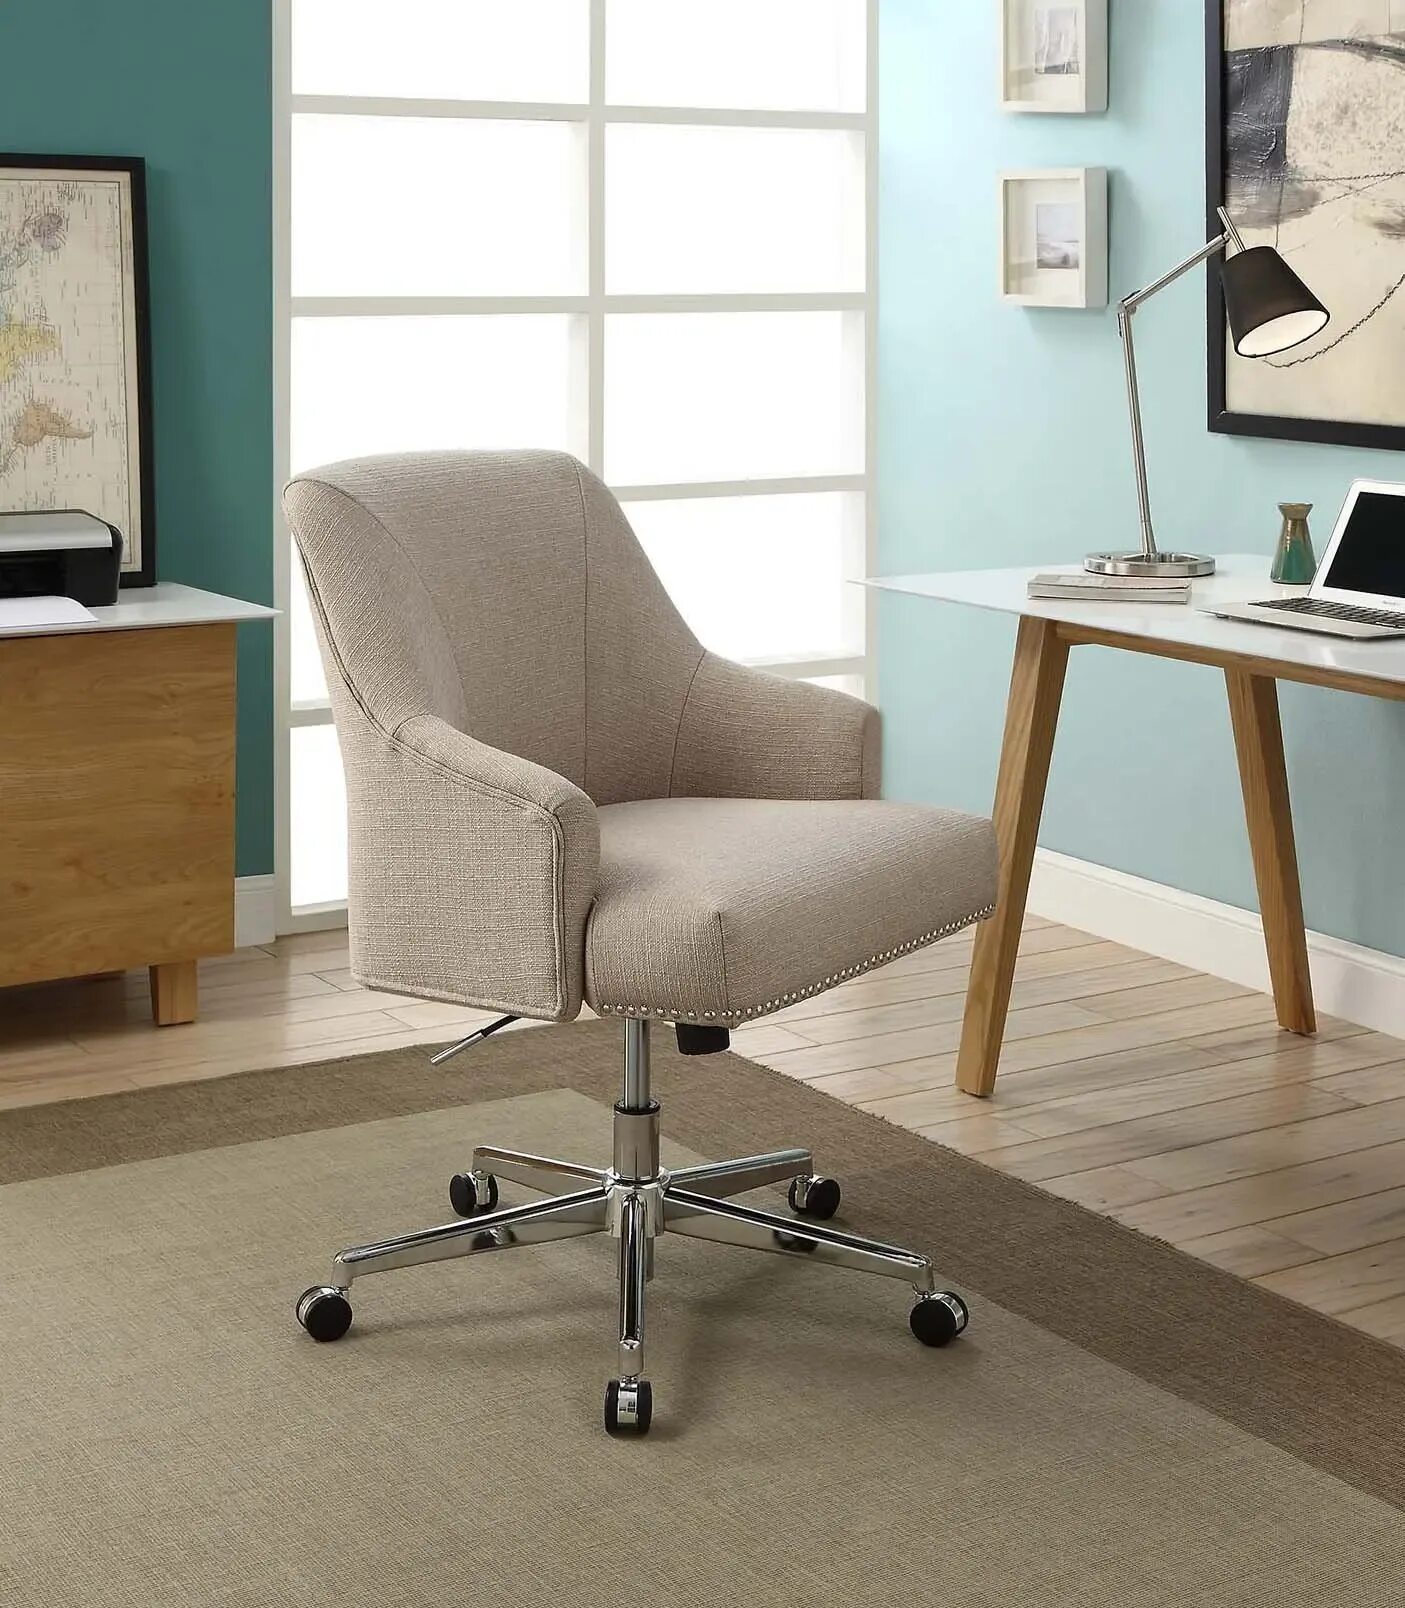 Кресло рабочее. Стул для домашнего кабинета. Кресло для письменного стола. Кресло рабочее дизайнерское.